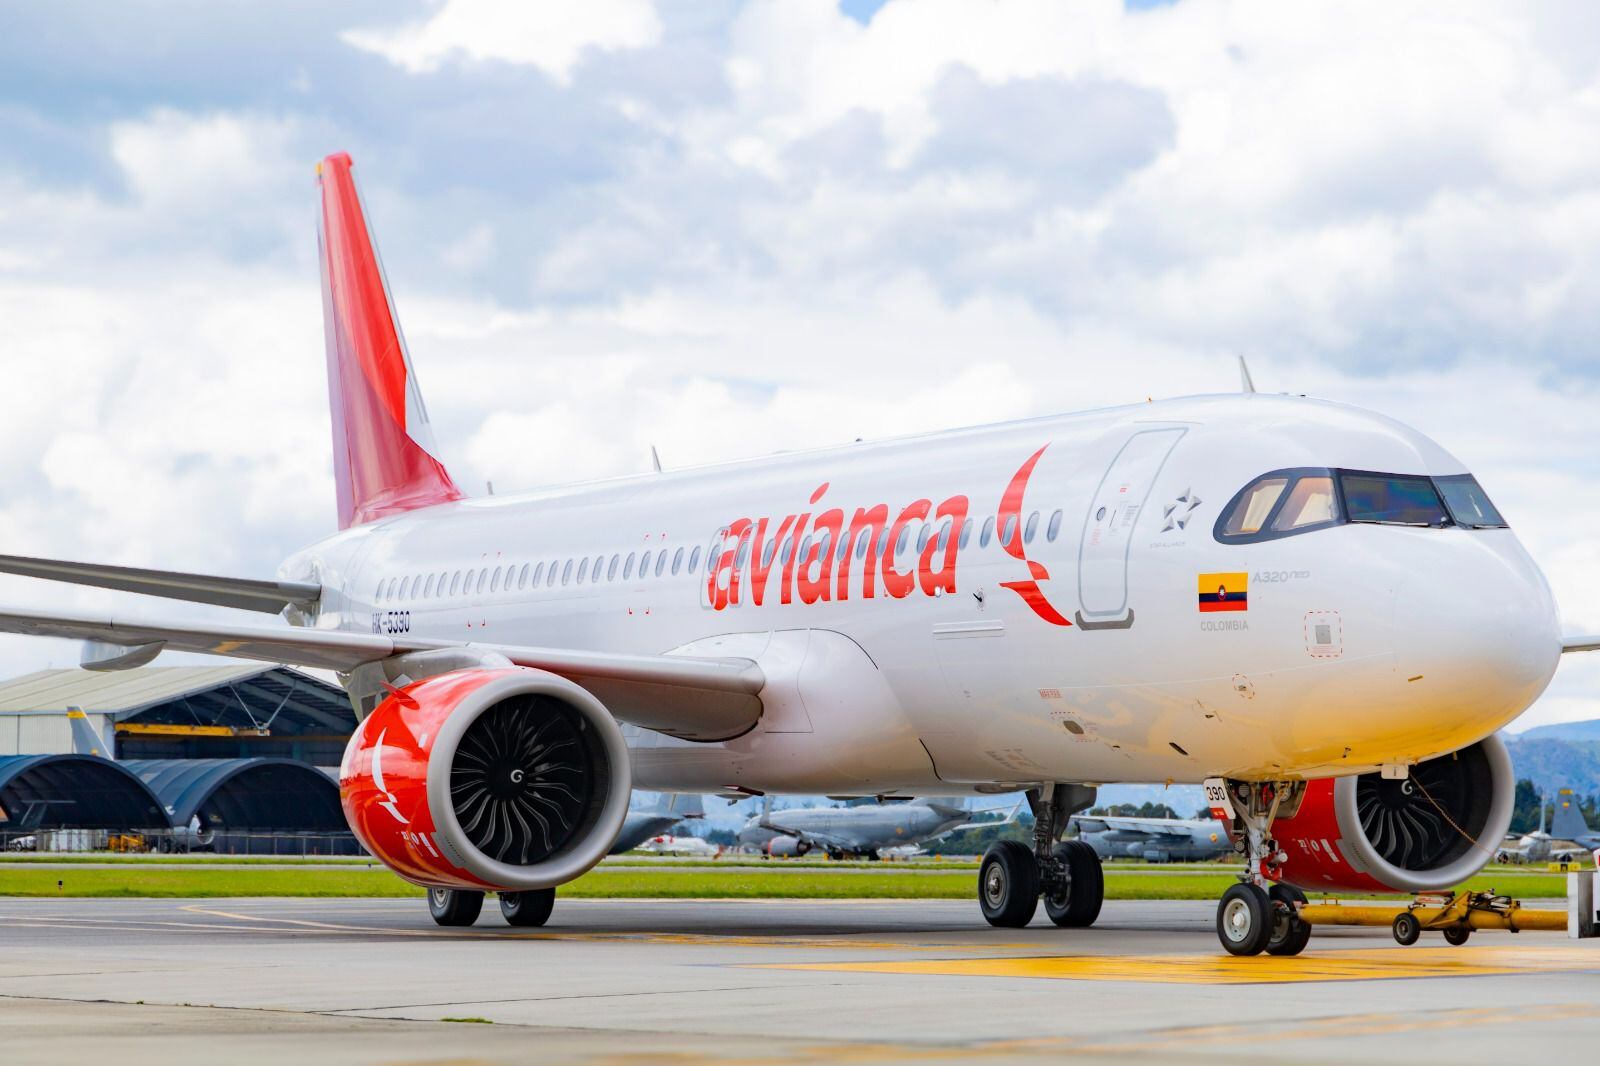 fechas y destinos: avianca lanzó una ‘oferta relámpago’ con vuelos desde $59.300